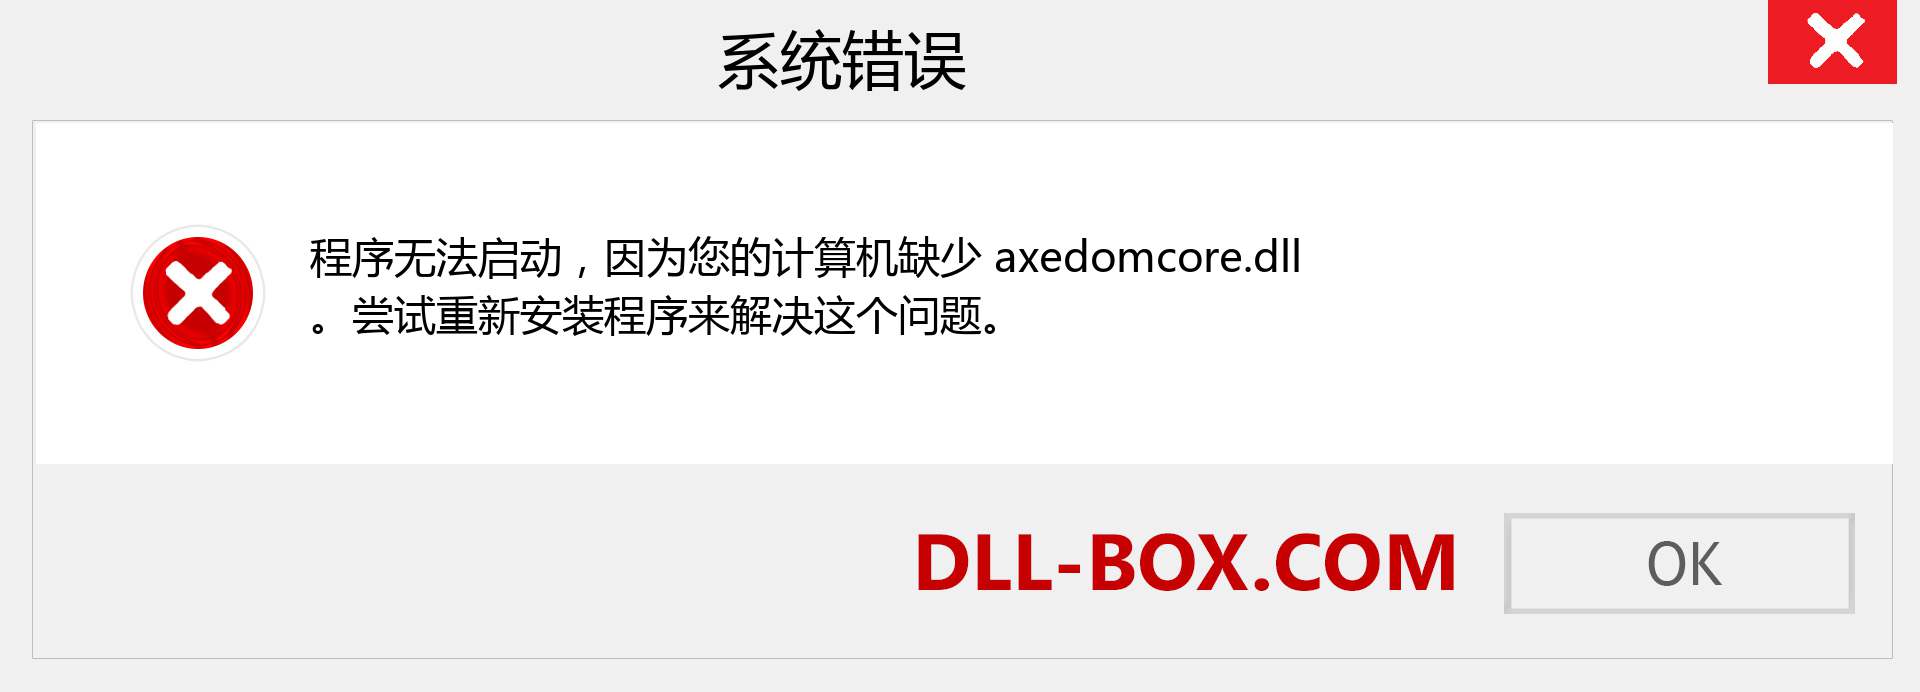 axedomcore.dll 文件丢失？。 适用于 Windows 7、8、10 的下载 - 修复 Windows、照片、图像上的 axedomcore dll 丢失错误